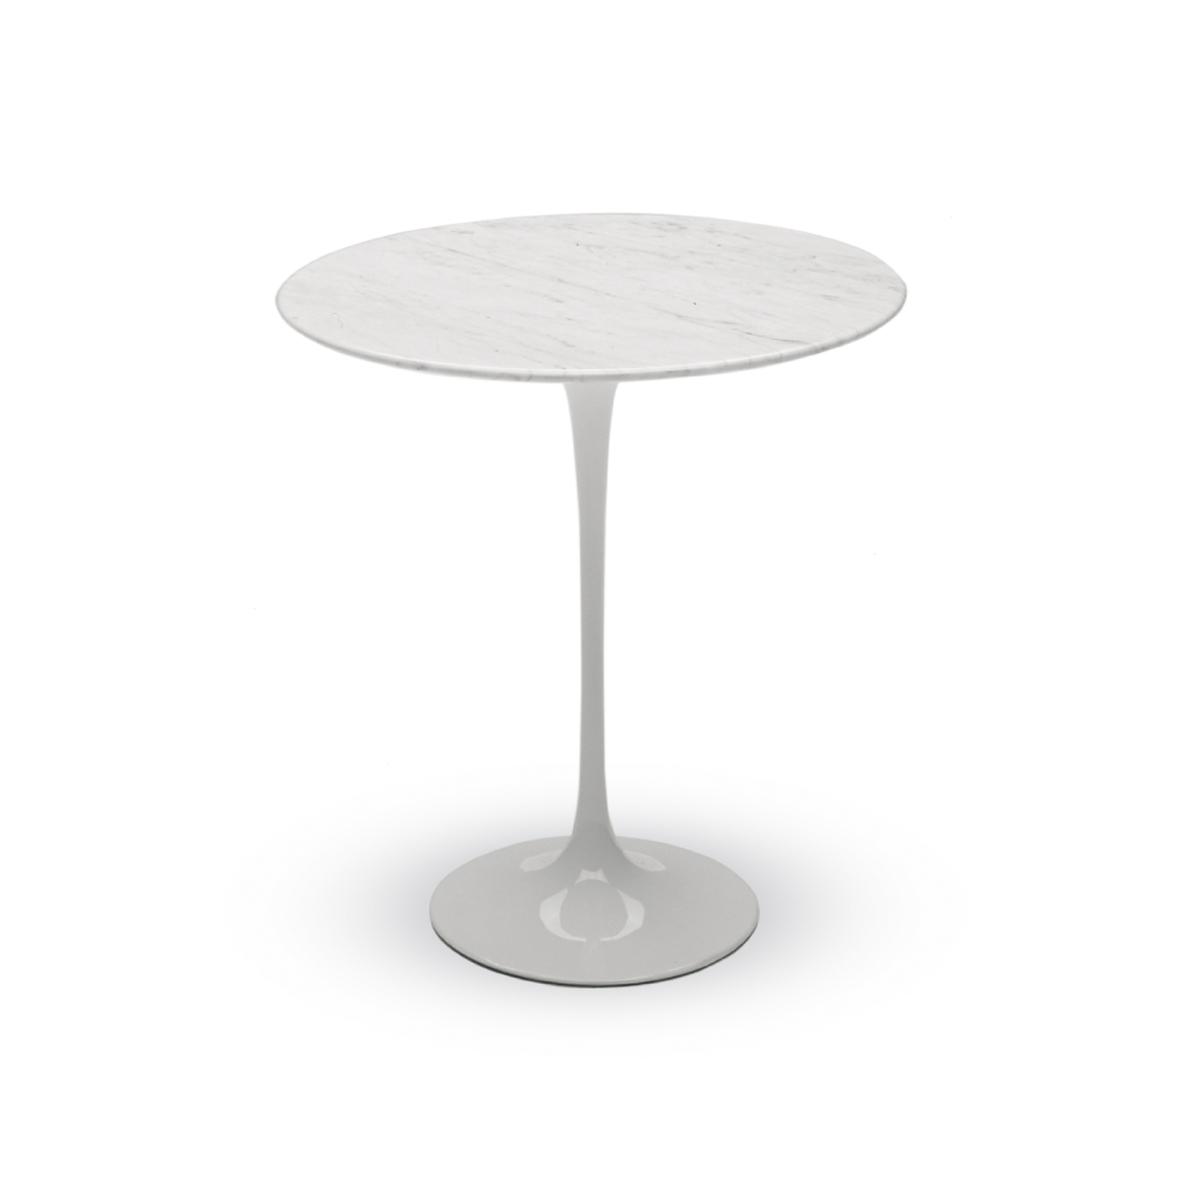 LUX156 Eero Saarinen - Tavolino rotondo